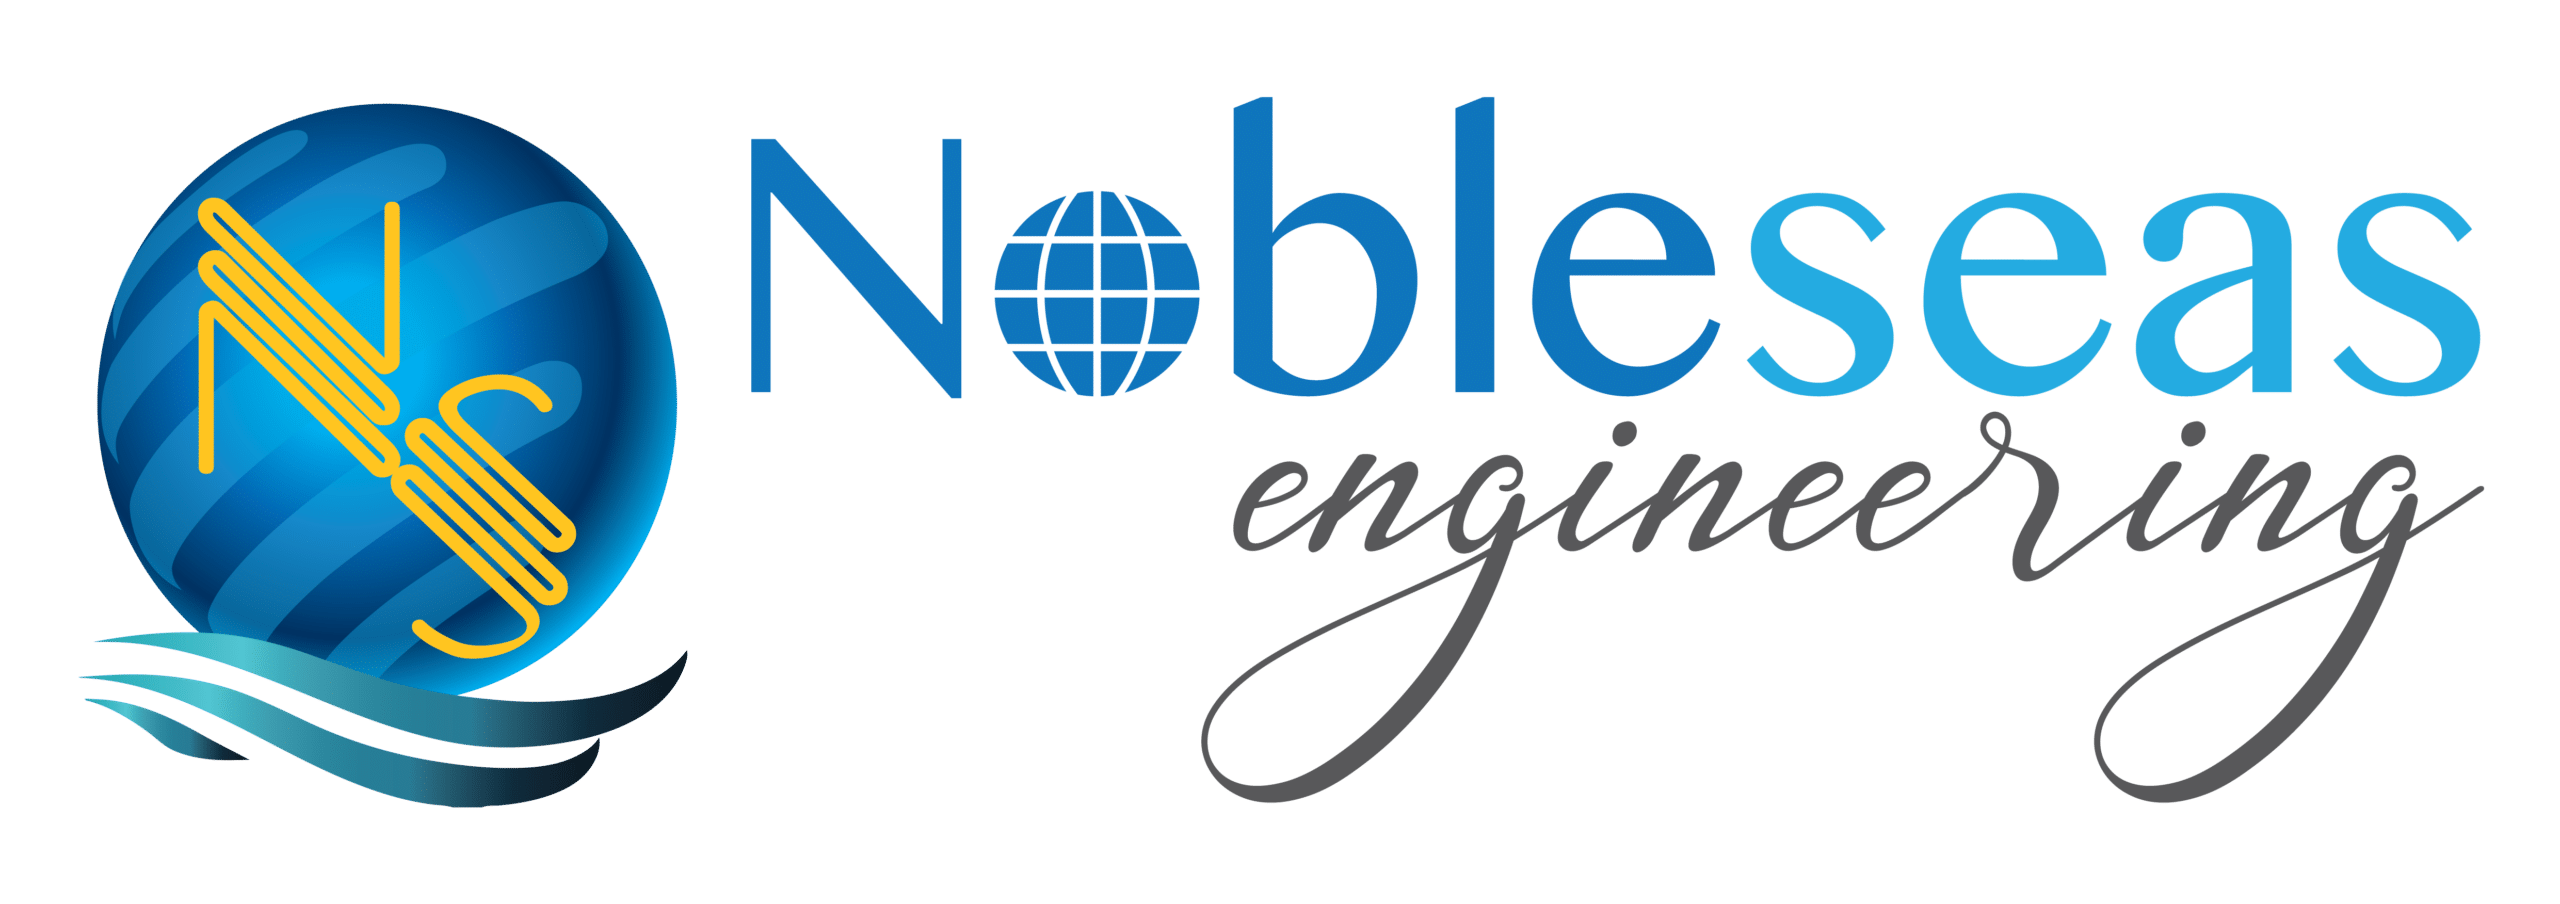 Nobleseas Engineering